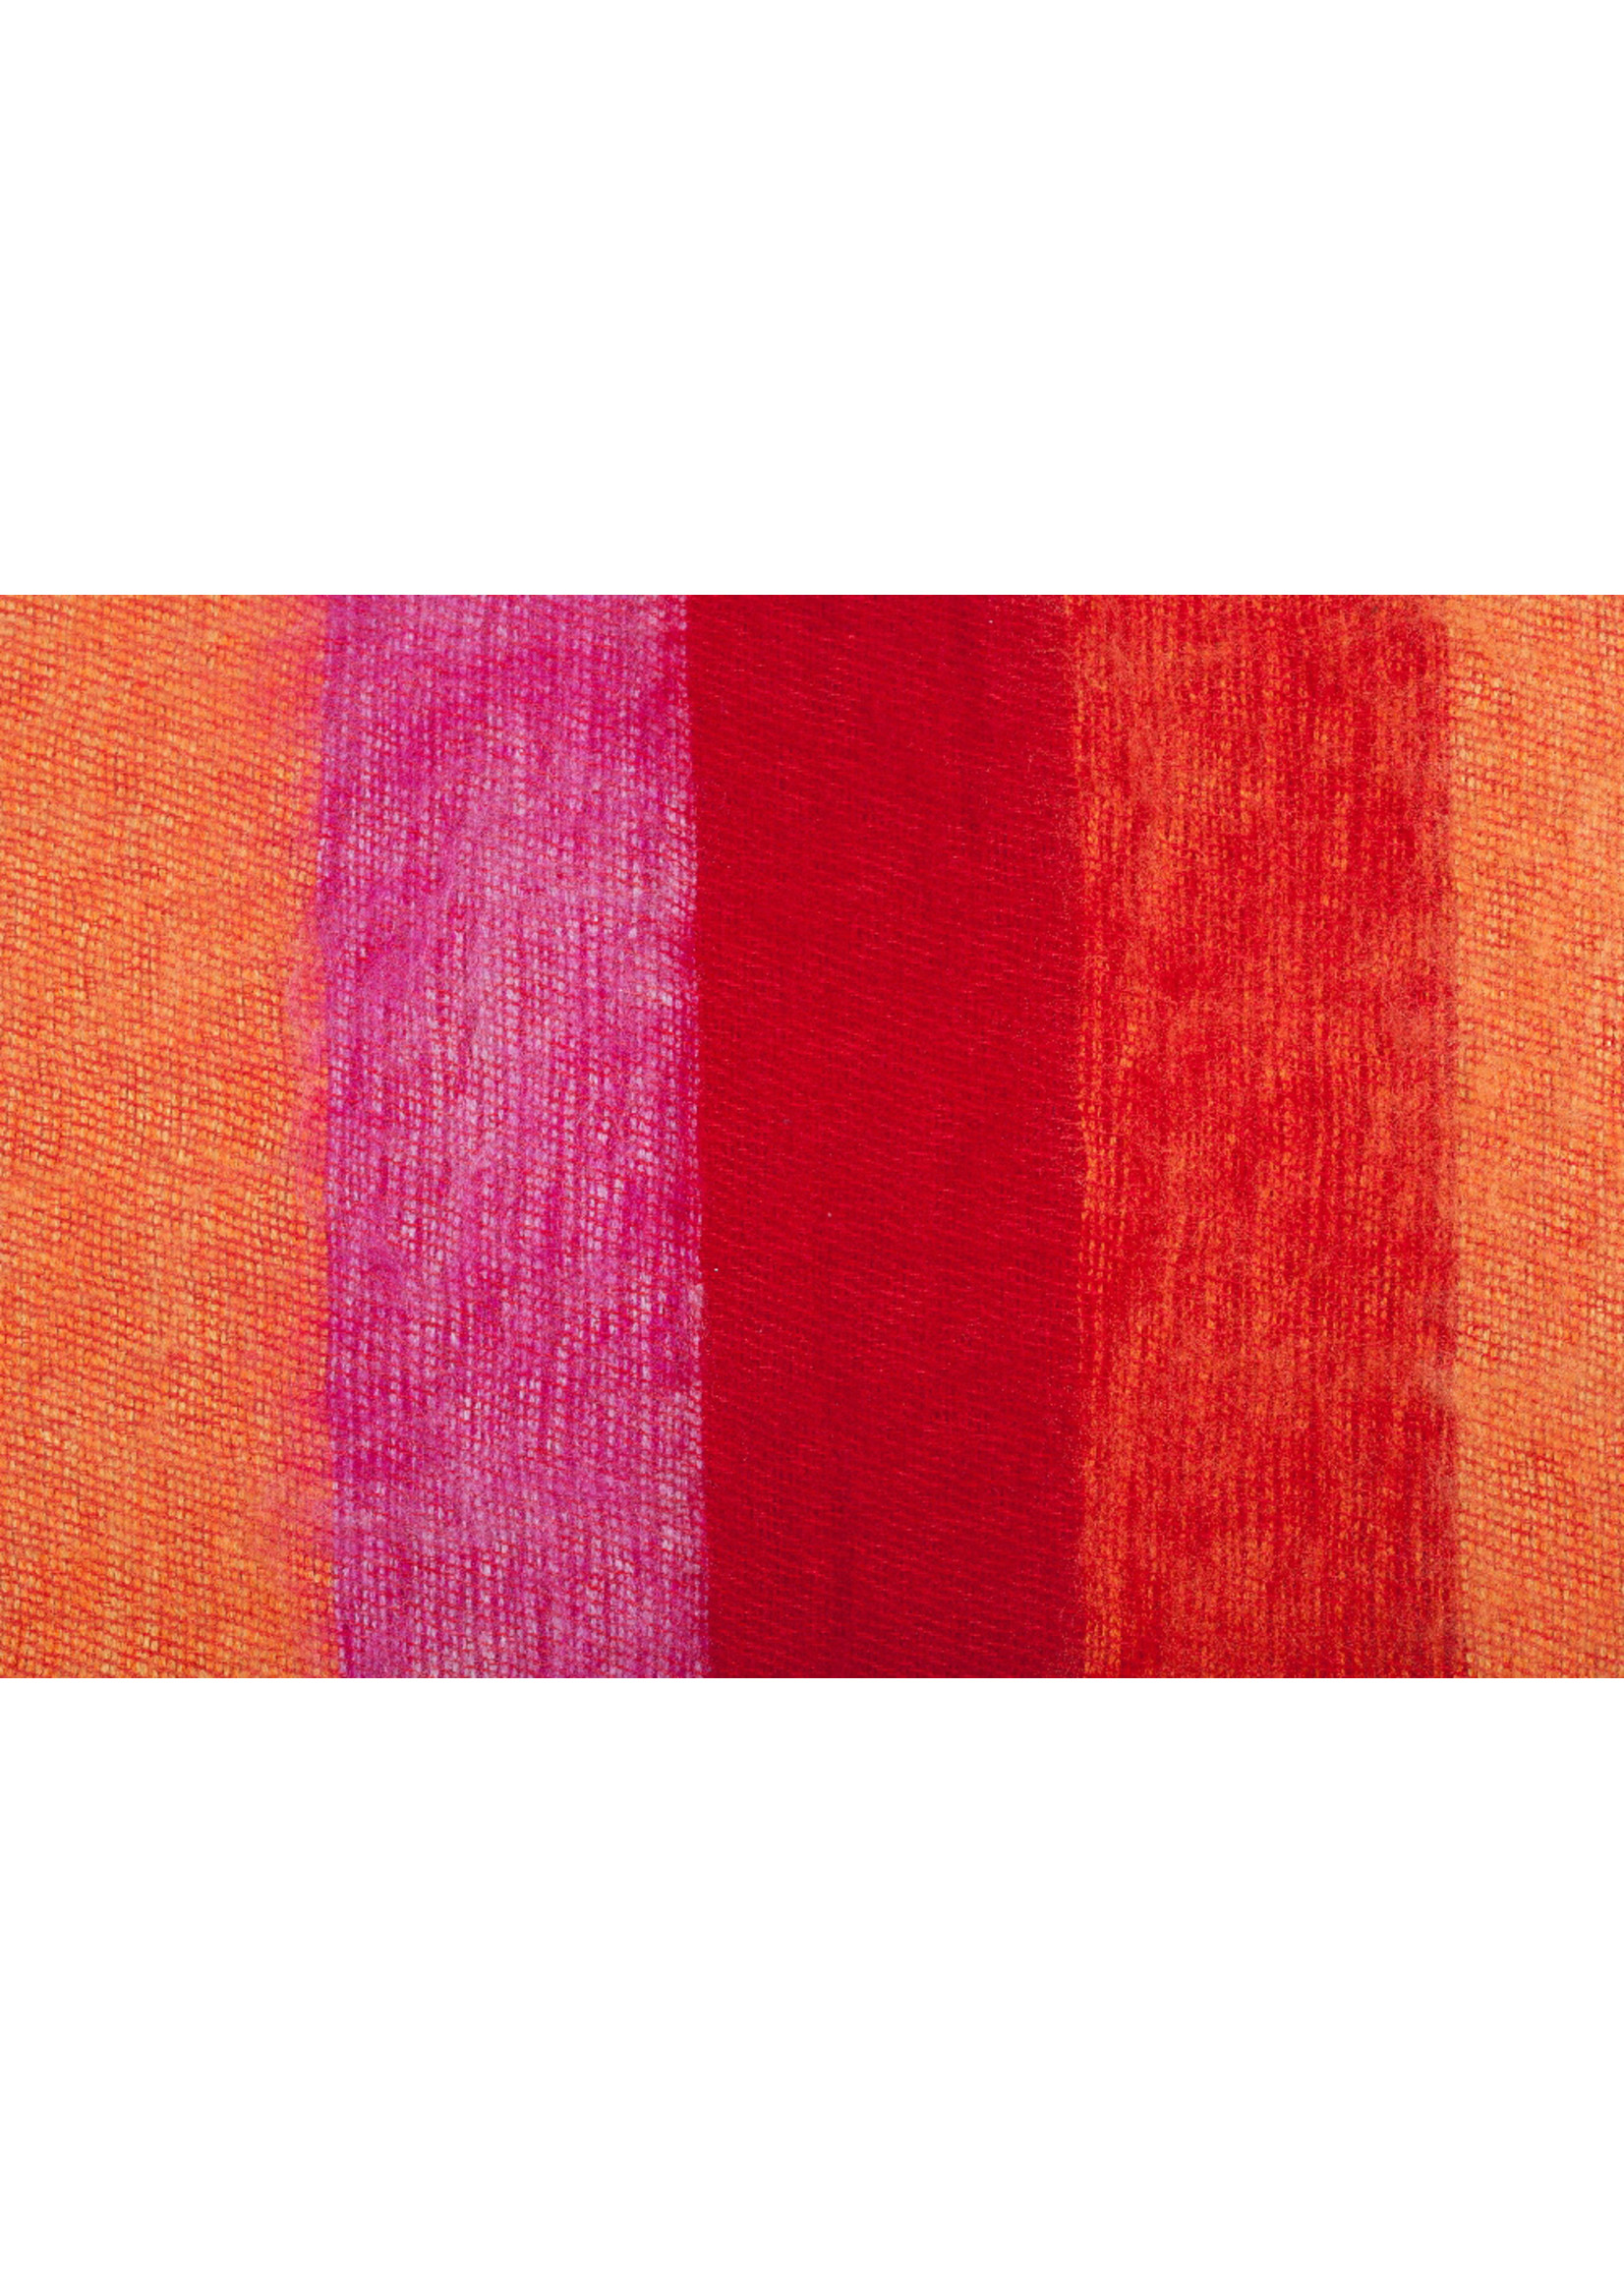 Sjaal met Verhaal Shawl 140x30 cm (wool-look) red-pink-orange